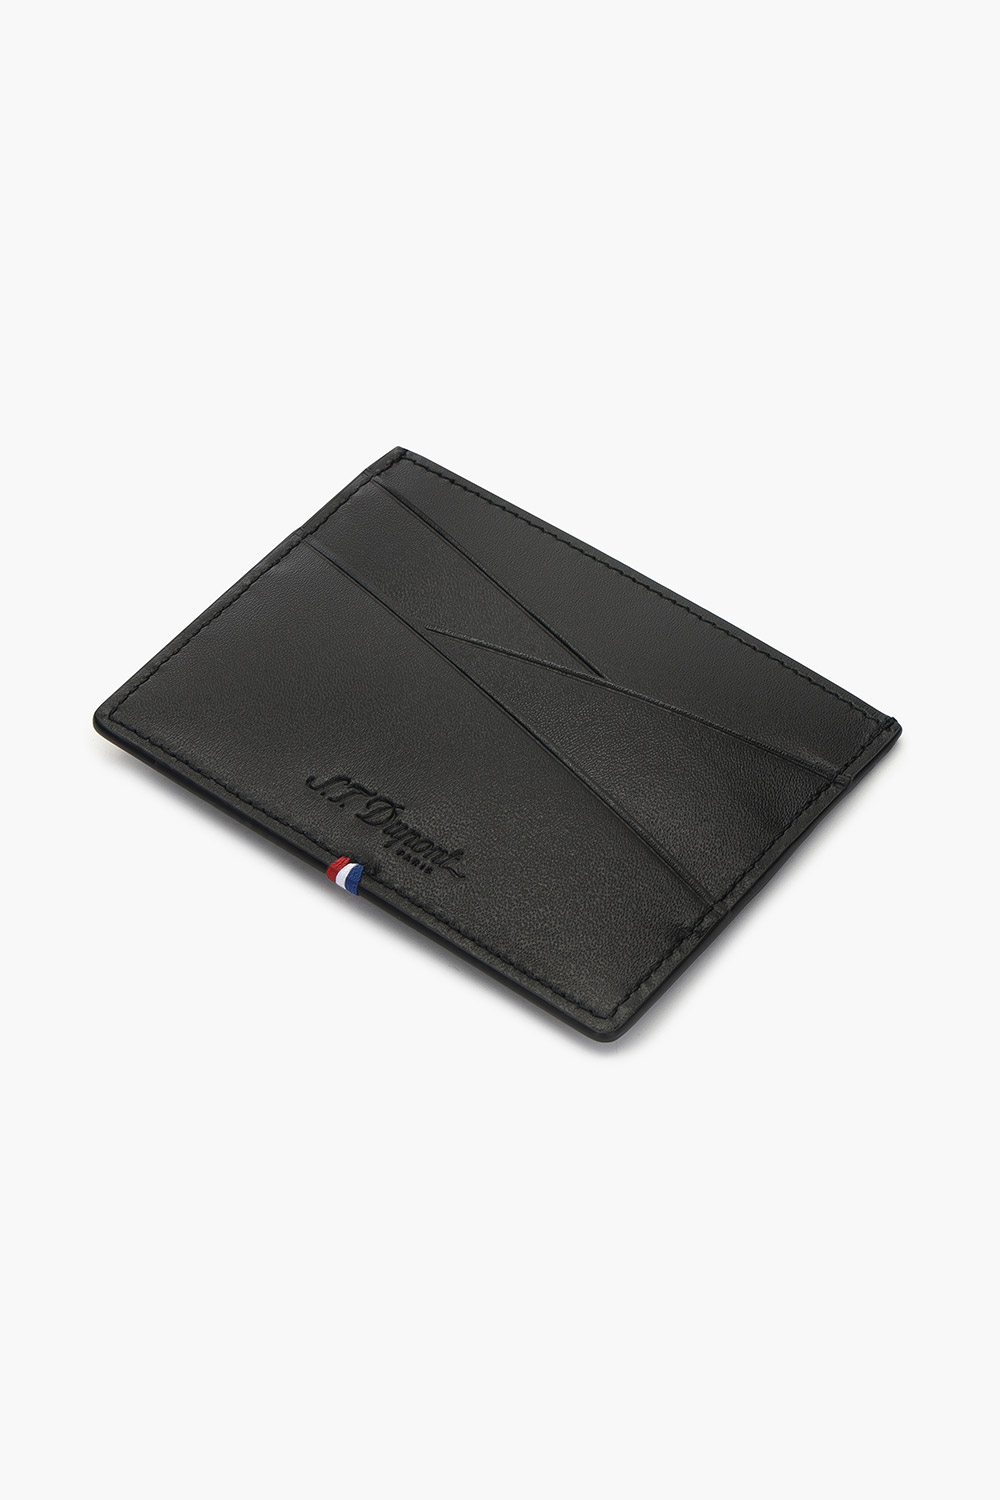 네오캡슐 카드홀더 블랙 CI184012Z(2023.12.21 특판납품 판매종료)